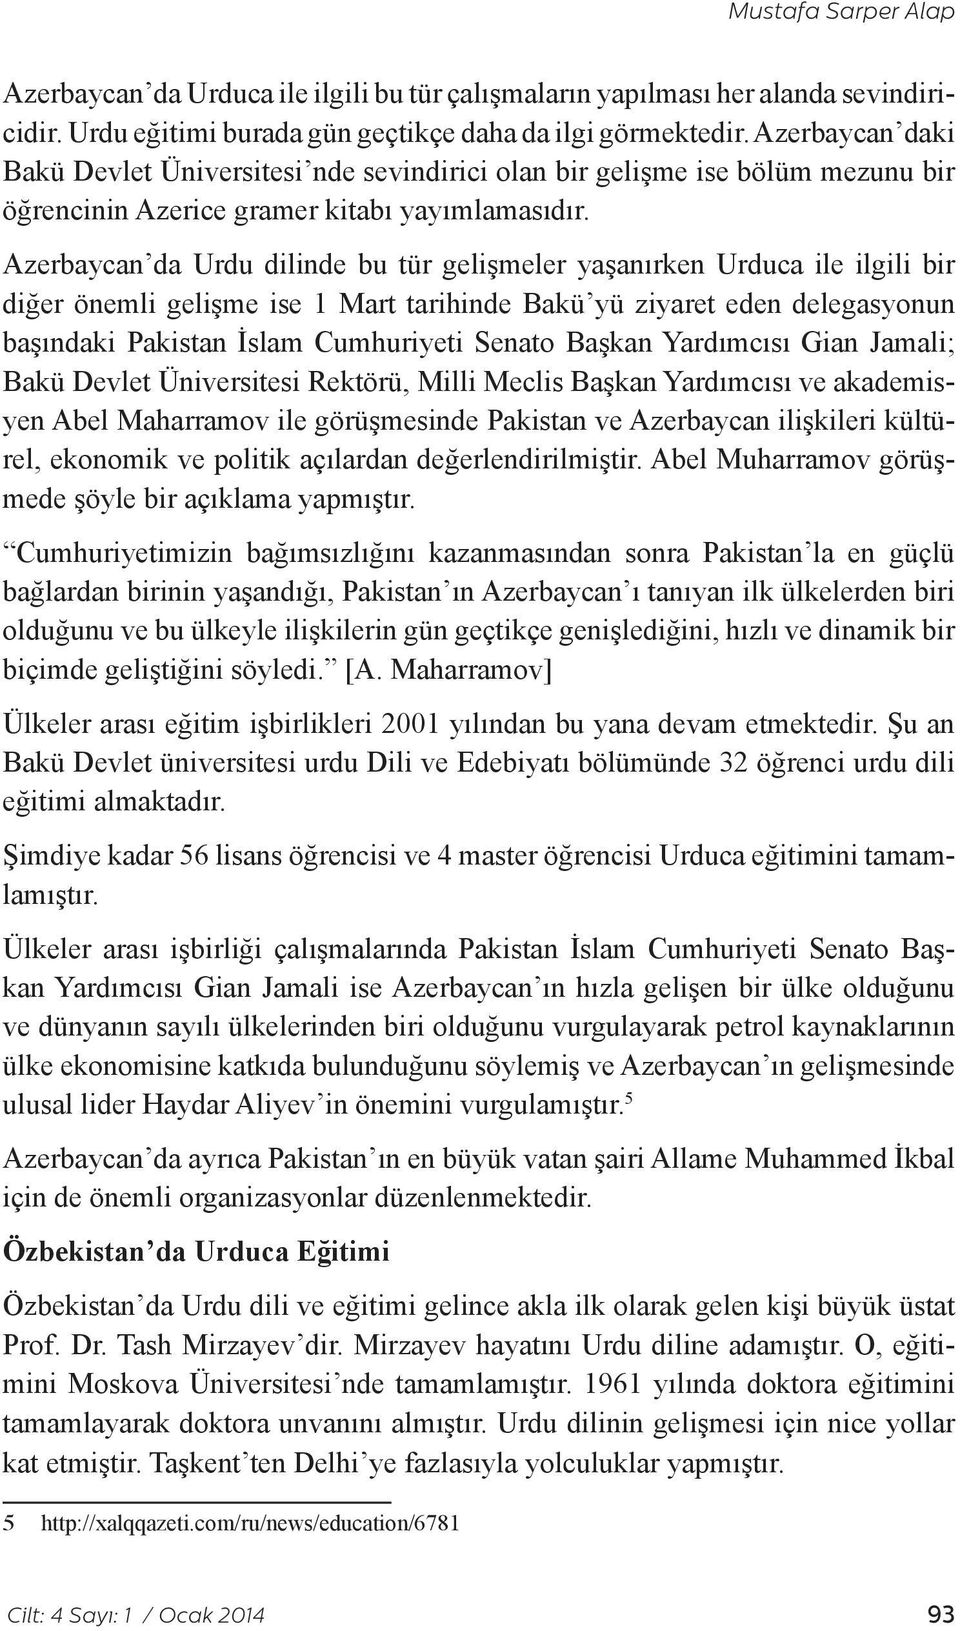 Azerbaycan da Urdu dilinde bu tür gelişmeler yaşanırken Urduca ile ilgili bir diğer önemli gelişme ise 1 Mart tarihinde Bakü yü ziyaret eden delegasyonun başındaki Pakistan İslam Cumhuriyeti Senato